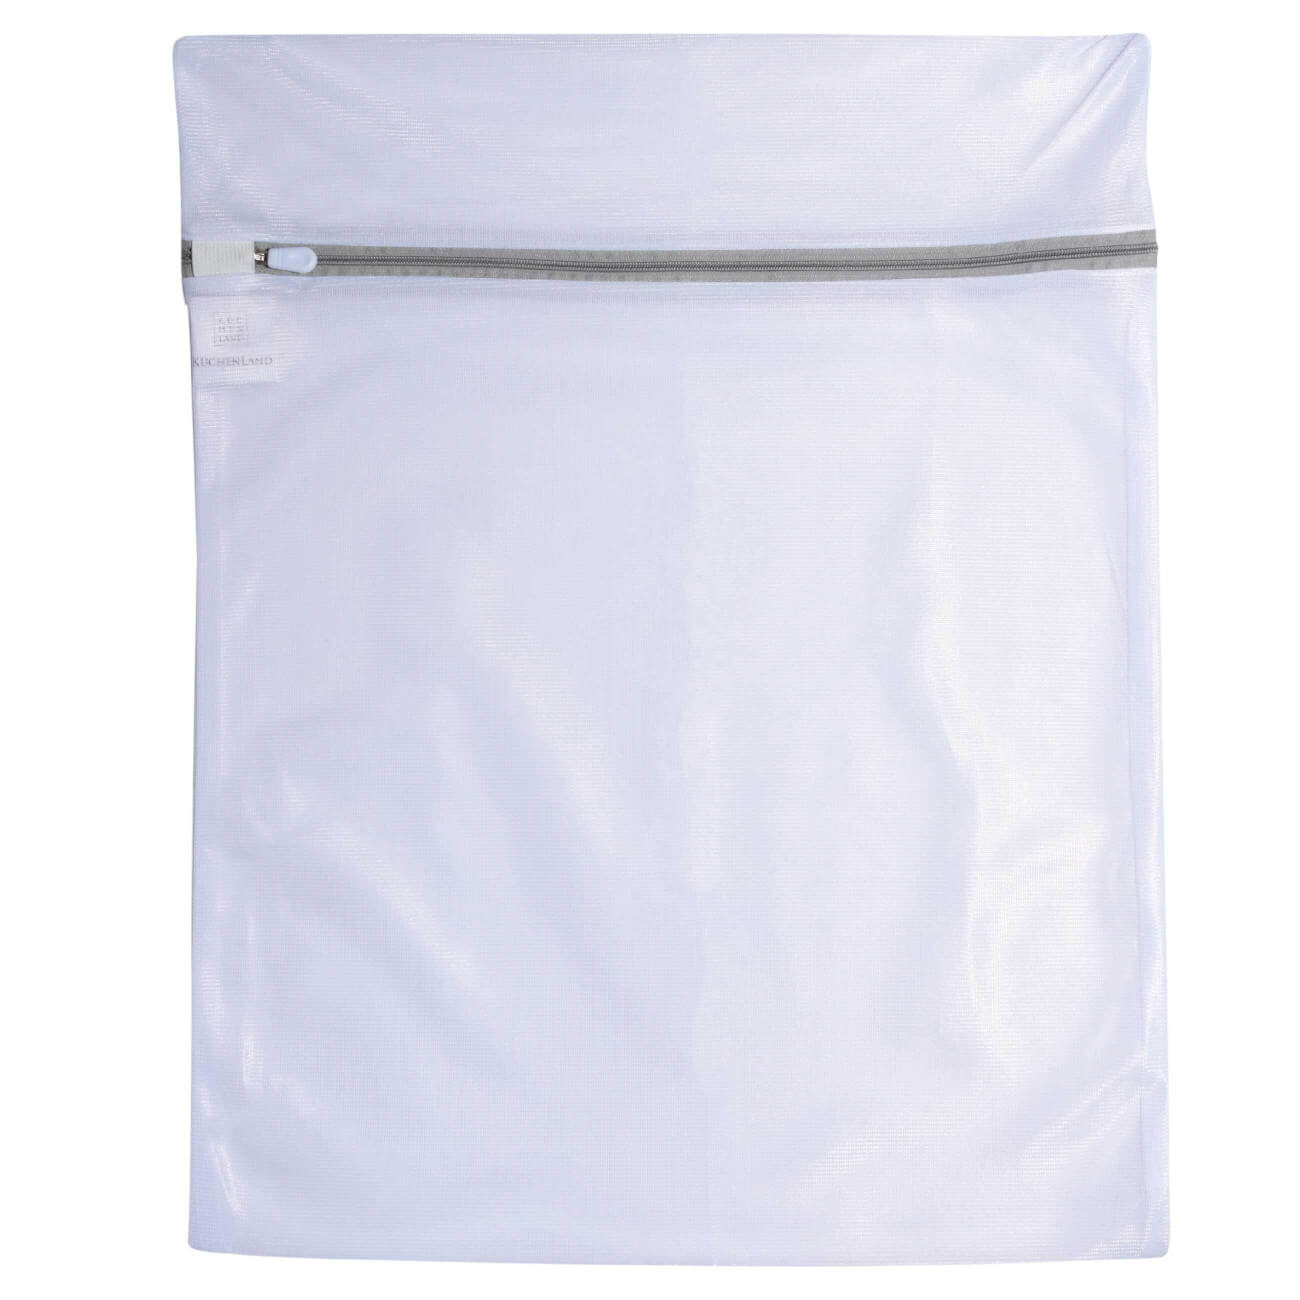 Мешок для стирки одежды, 40х50 см, полиэстер, бело-серый, Safety plus мешок для стирки доляна